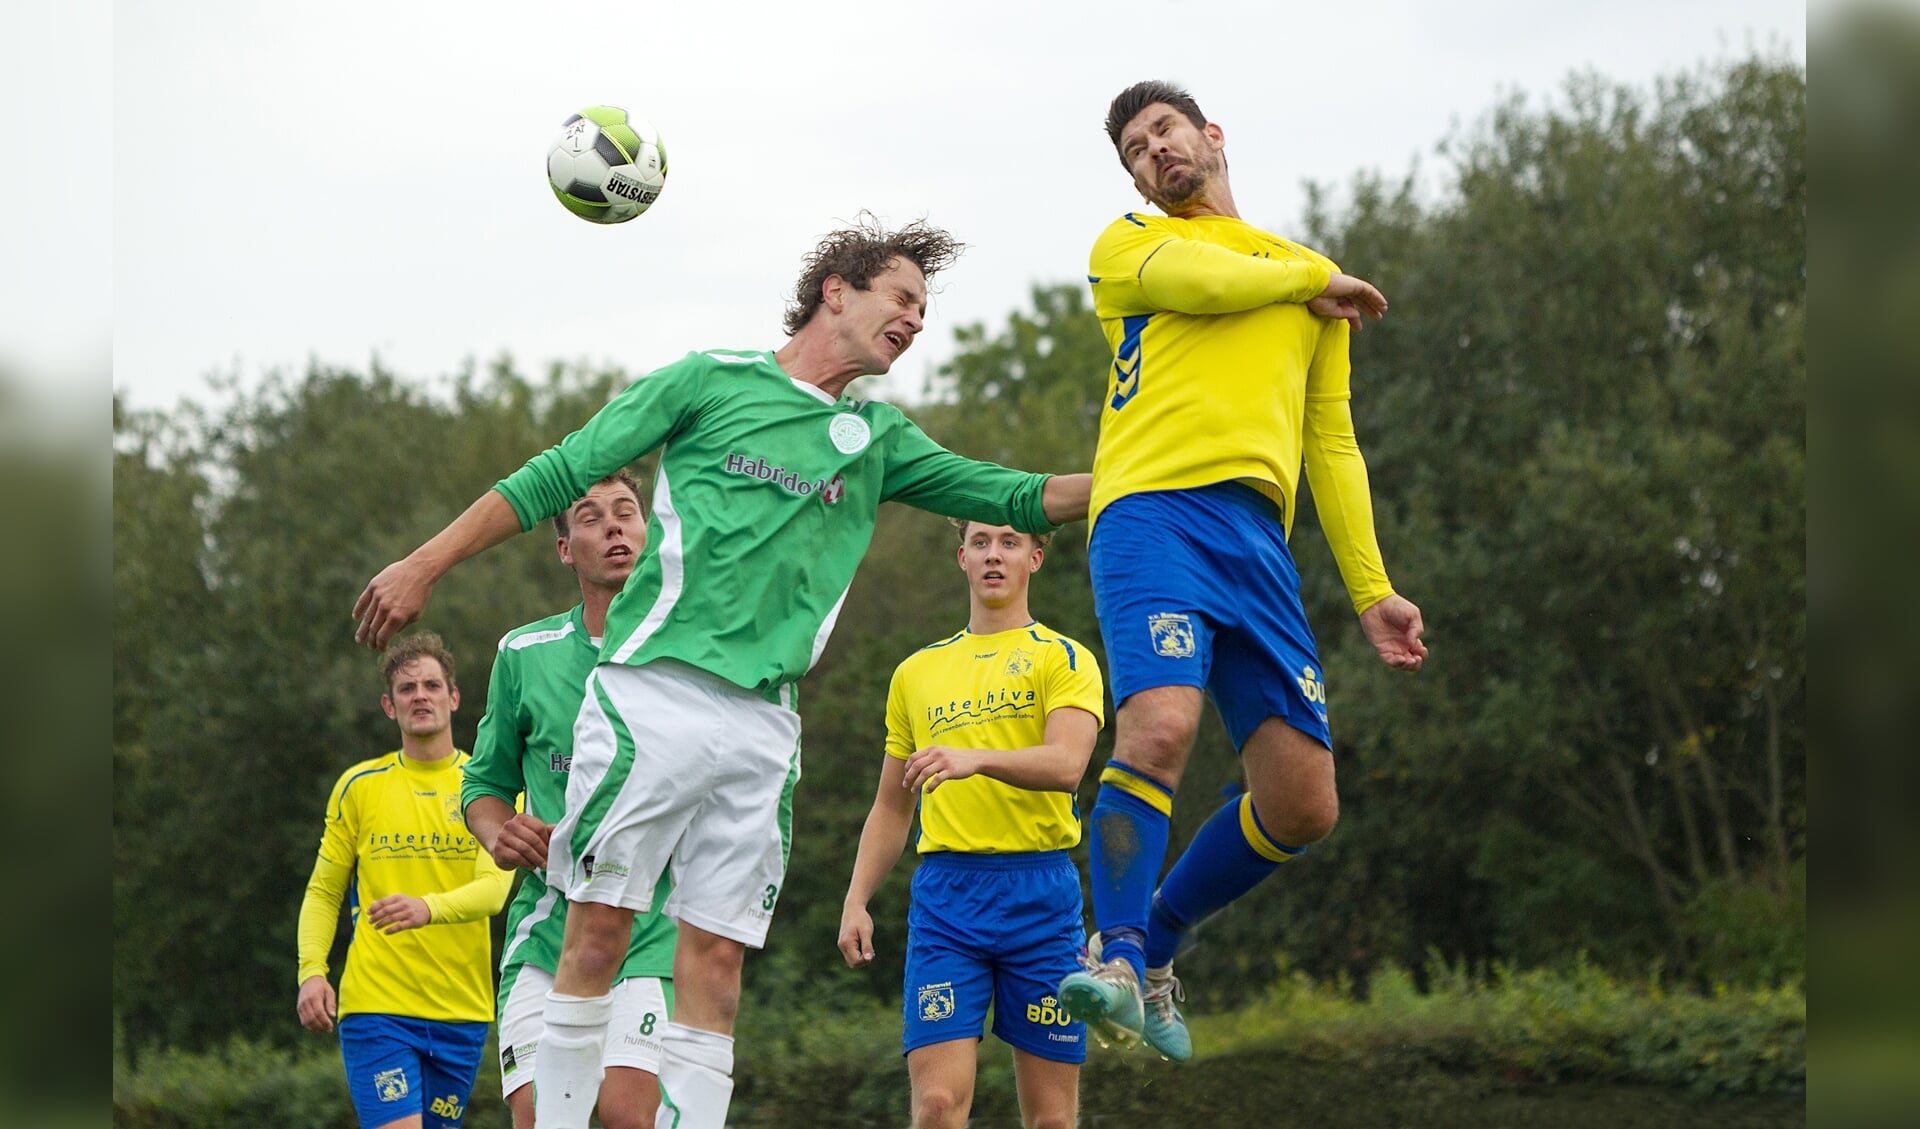 VVB'er Lajos Scholtens (rechts) in duel. Andere VVB'ers Michel van de Bunt (links) en Fabian van Esch (tweede van rechts) kijken toe.